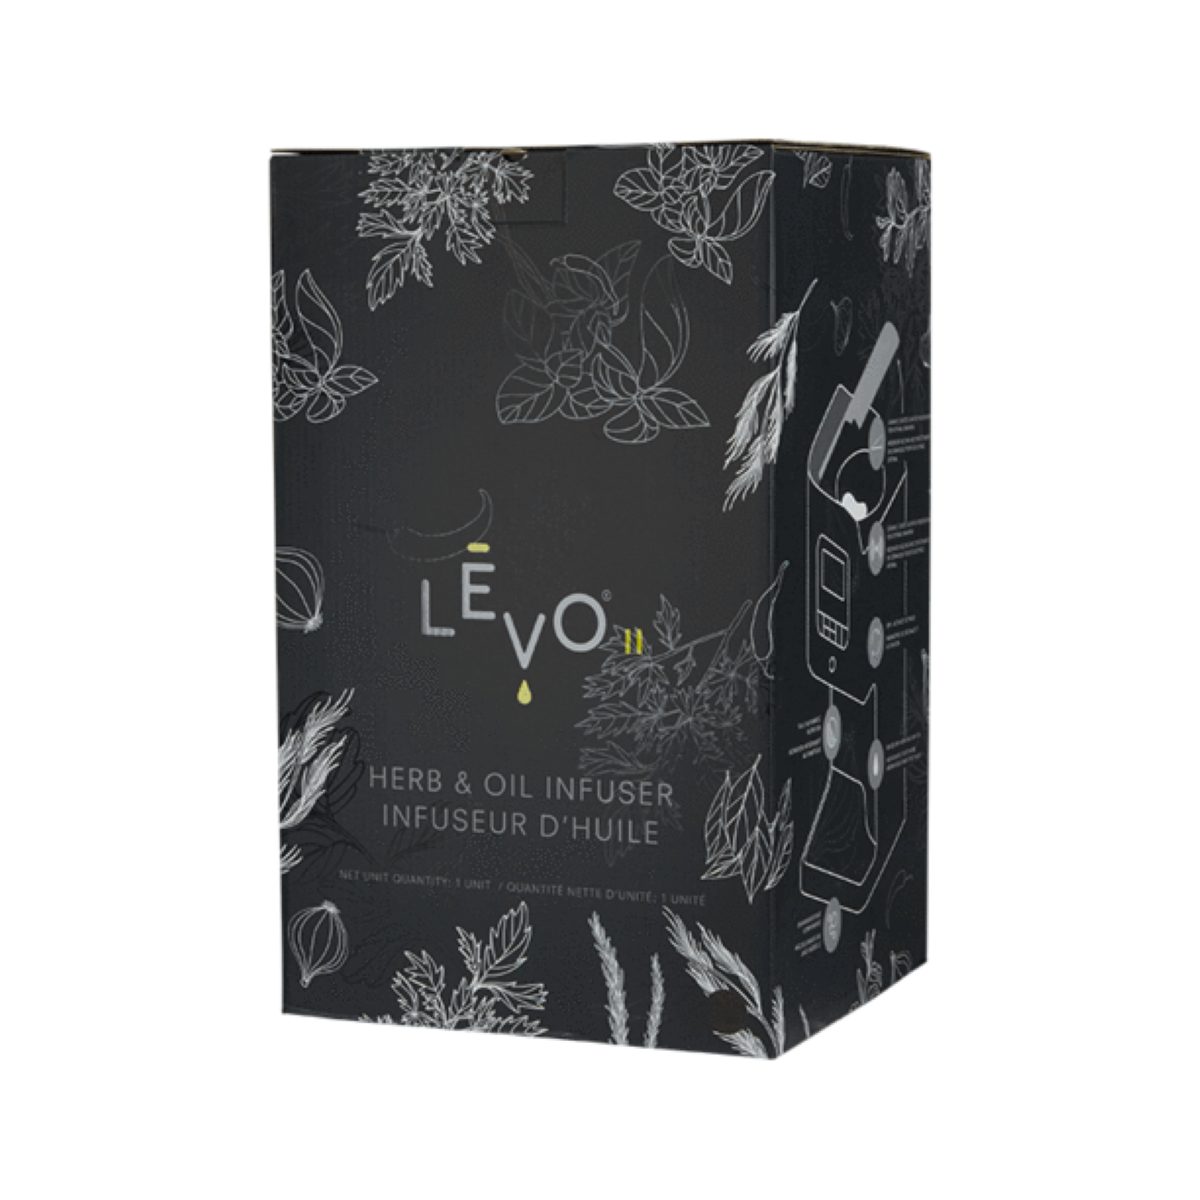 Levo II - Box/Package